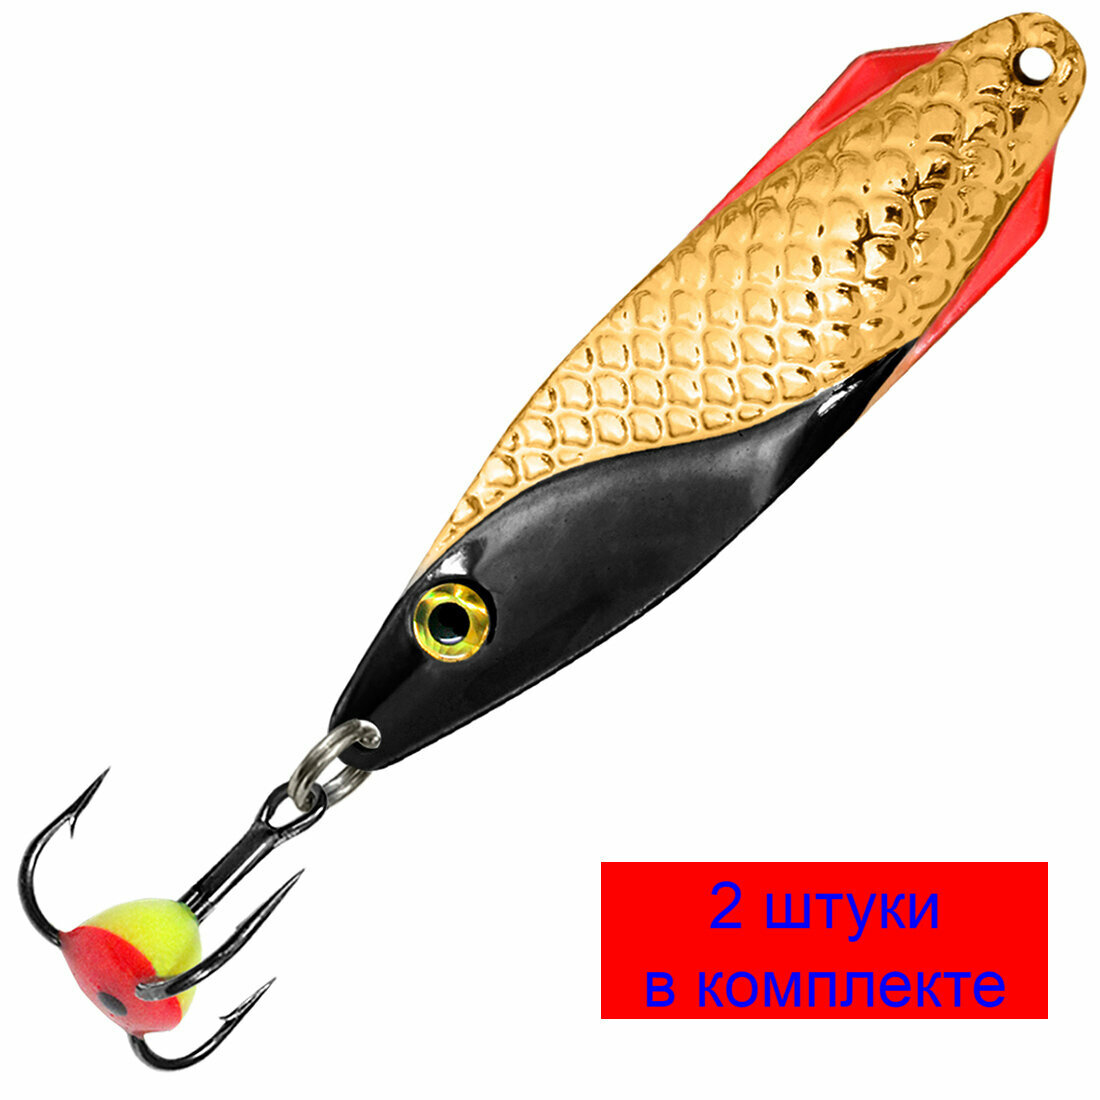 Блесна для рыбалки зимняя AQUA финт 7,5g, цвет 02 (золото, серебро, черный металлик) 2 штуки в комплекте.